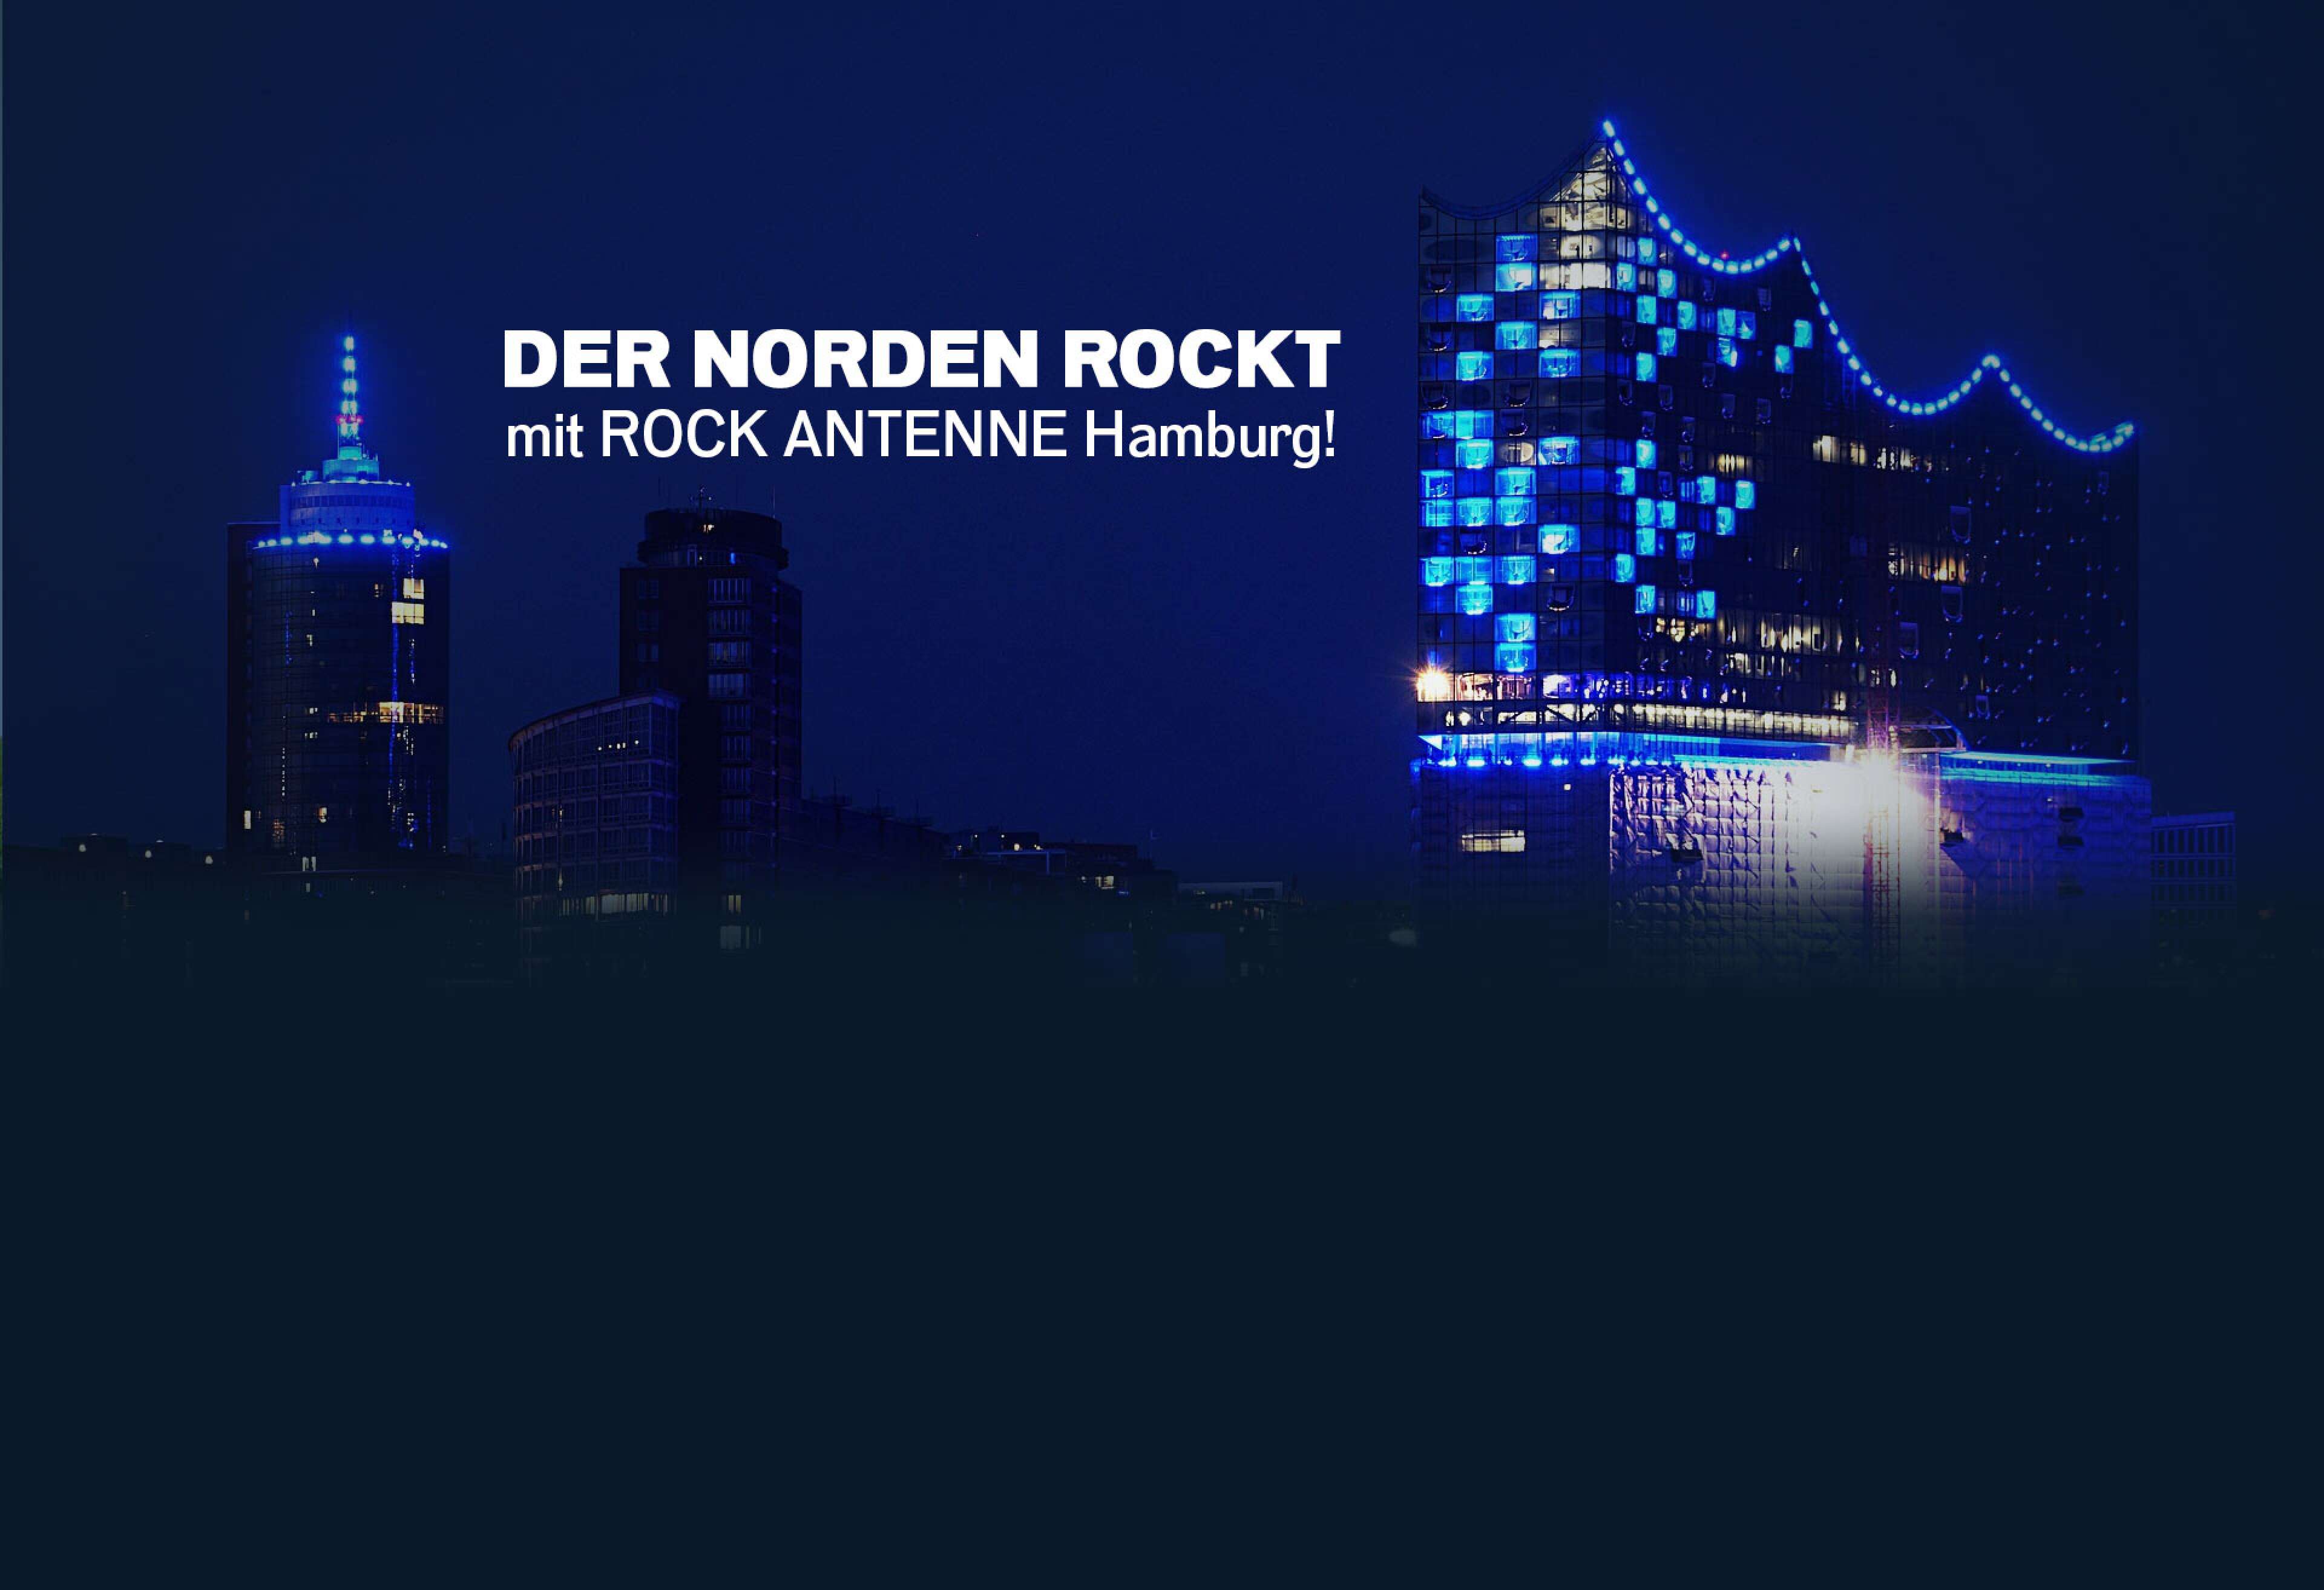 Ein Bild der Elbphilharmonie in Hamburg bei Nacht mit Text "Der Norden rockt mit ROCK ANTENNE Hamburg!"